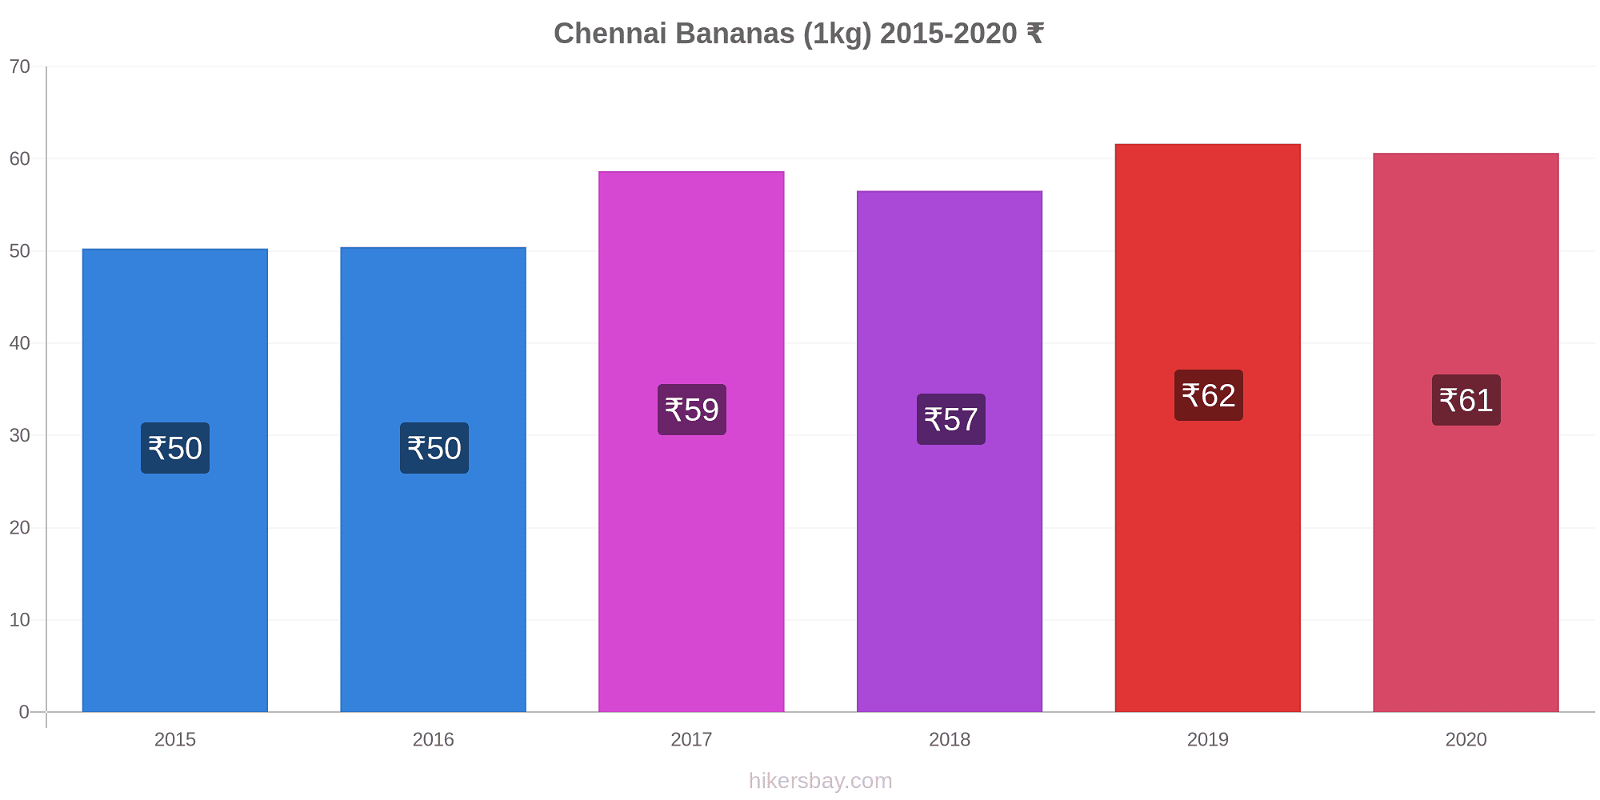 Chennai variação de preço Banana (1kg) hikersbay.com